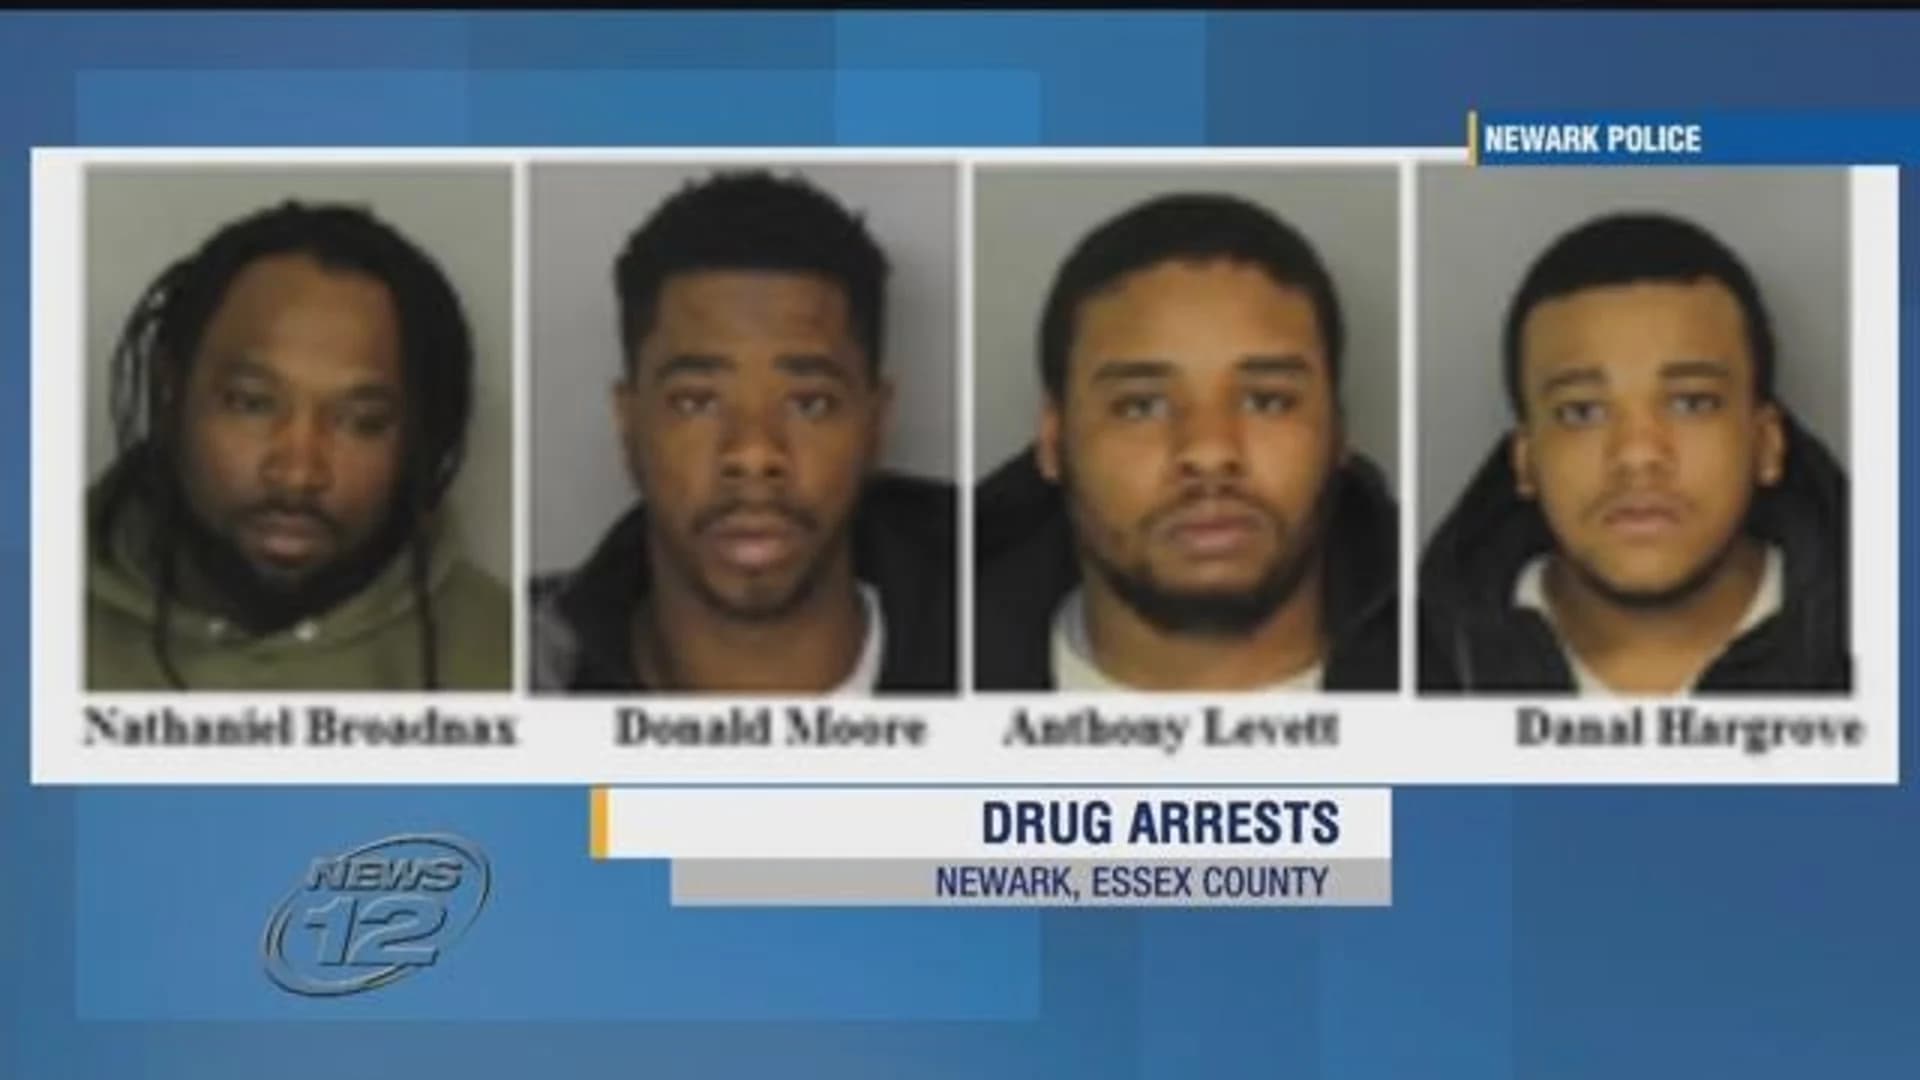 Police: 4 men arrested for selling narcotics in Newark